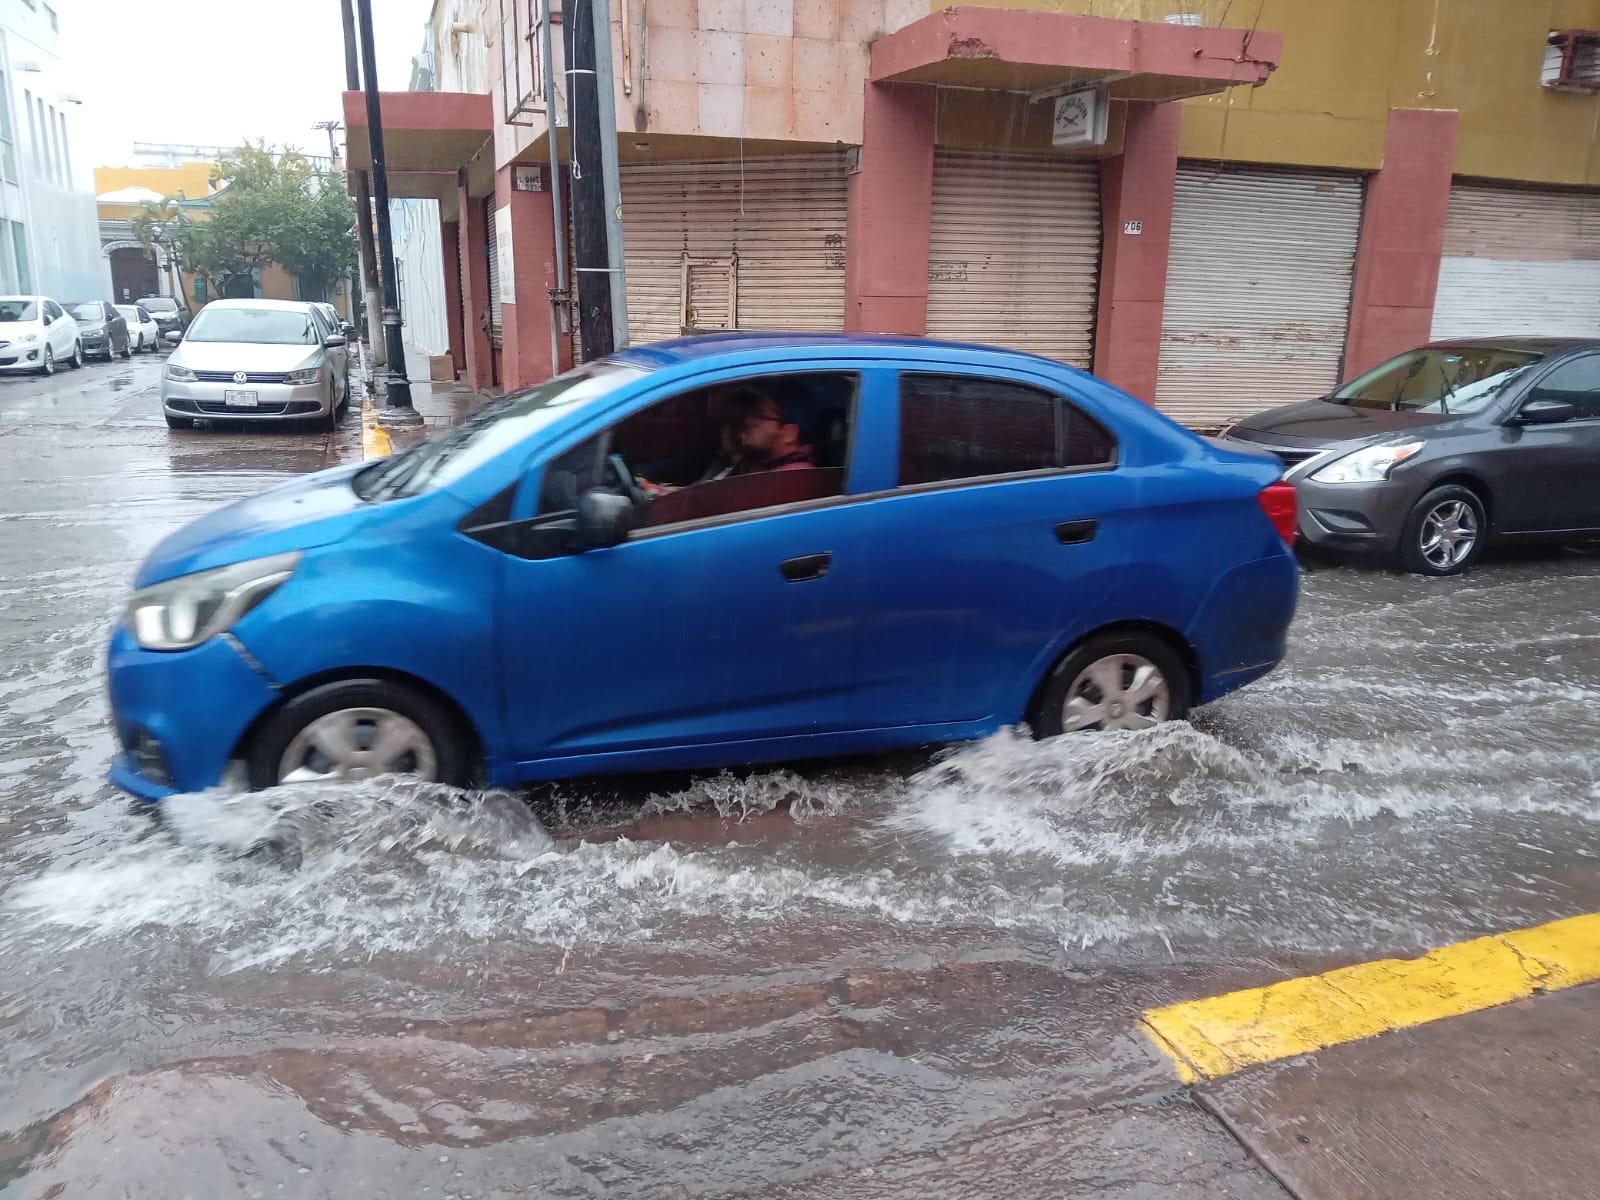 $!Tiene Mazatlán amanecer muy lluvioso este viernes